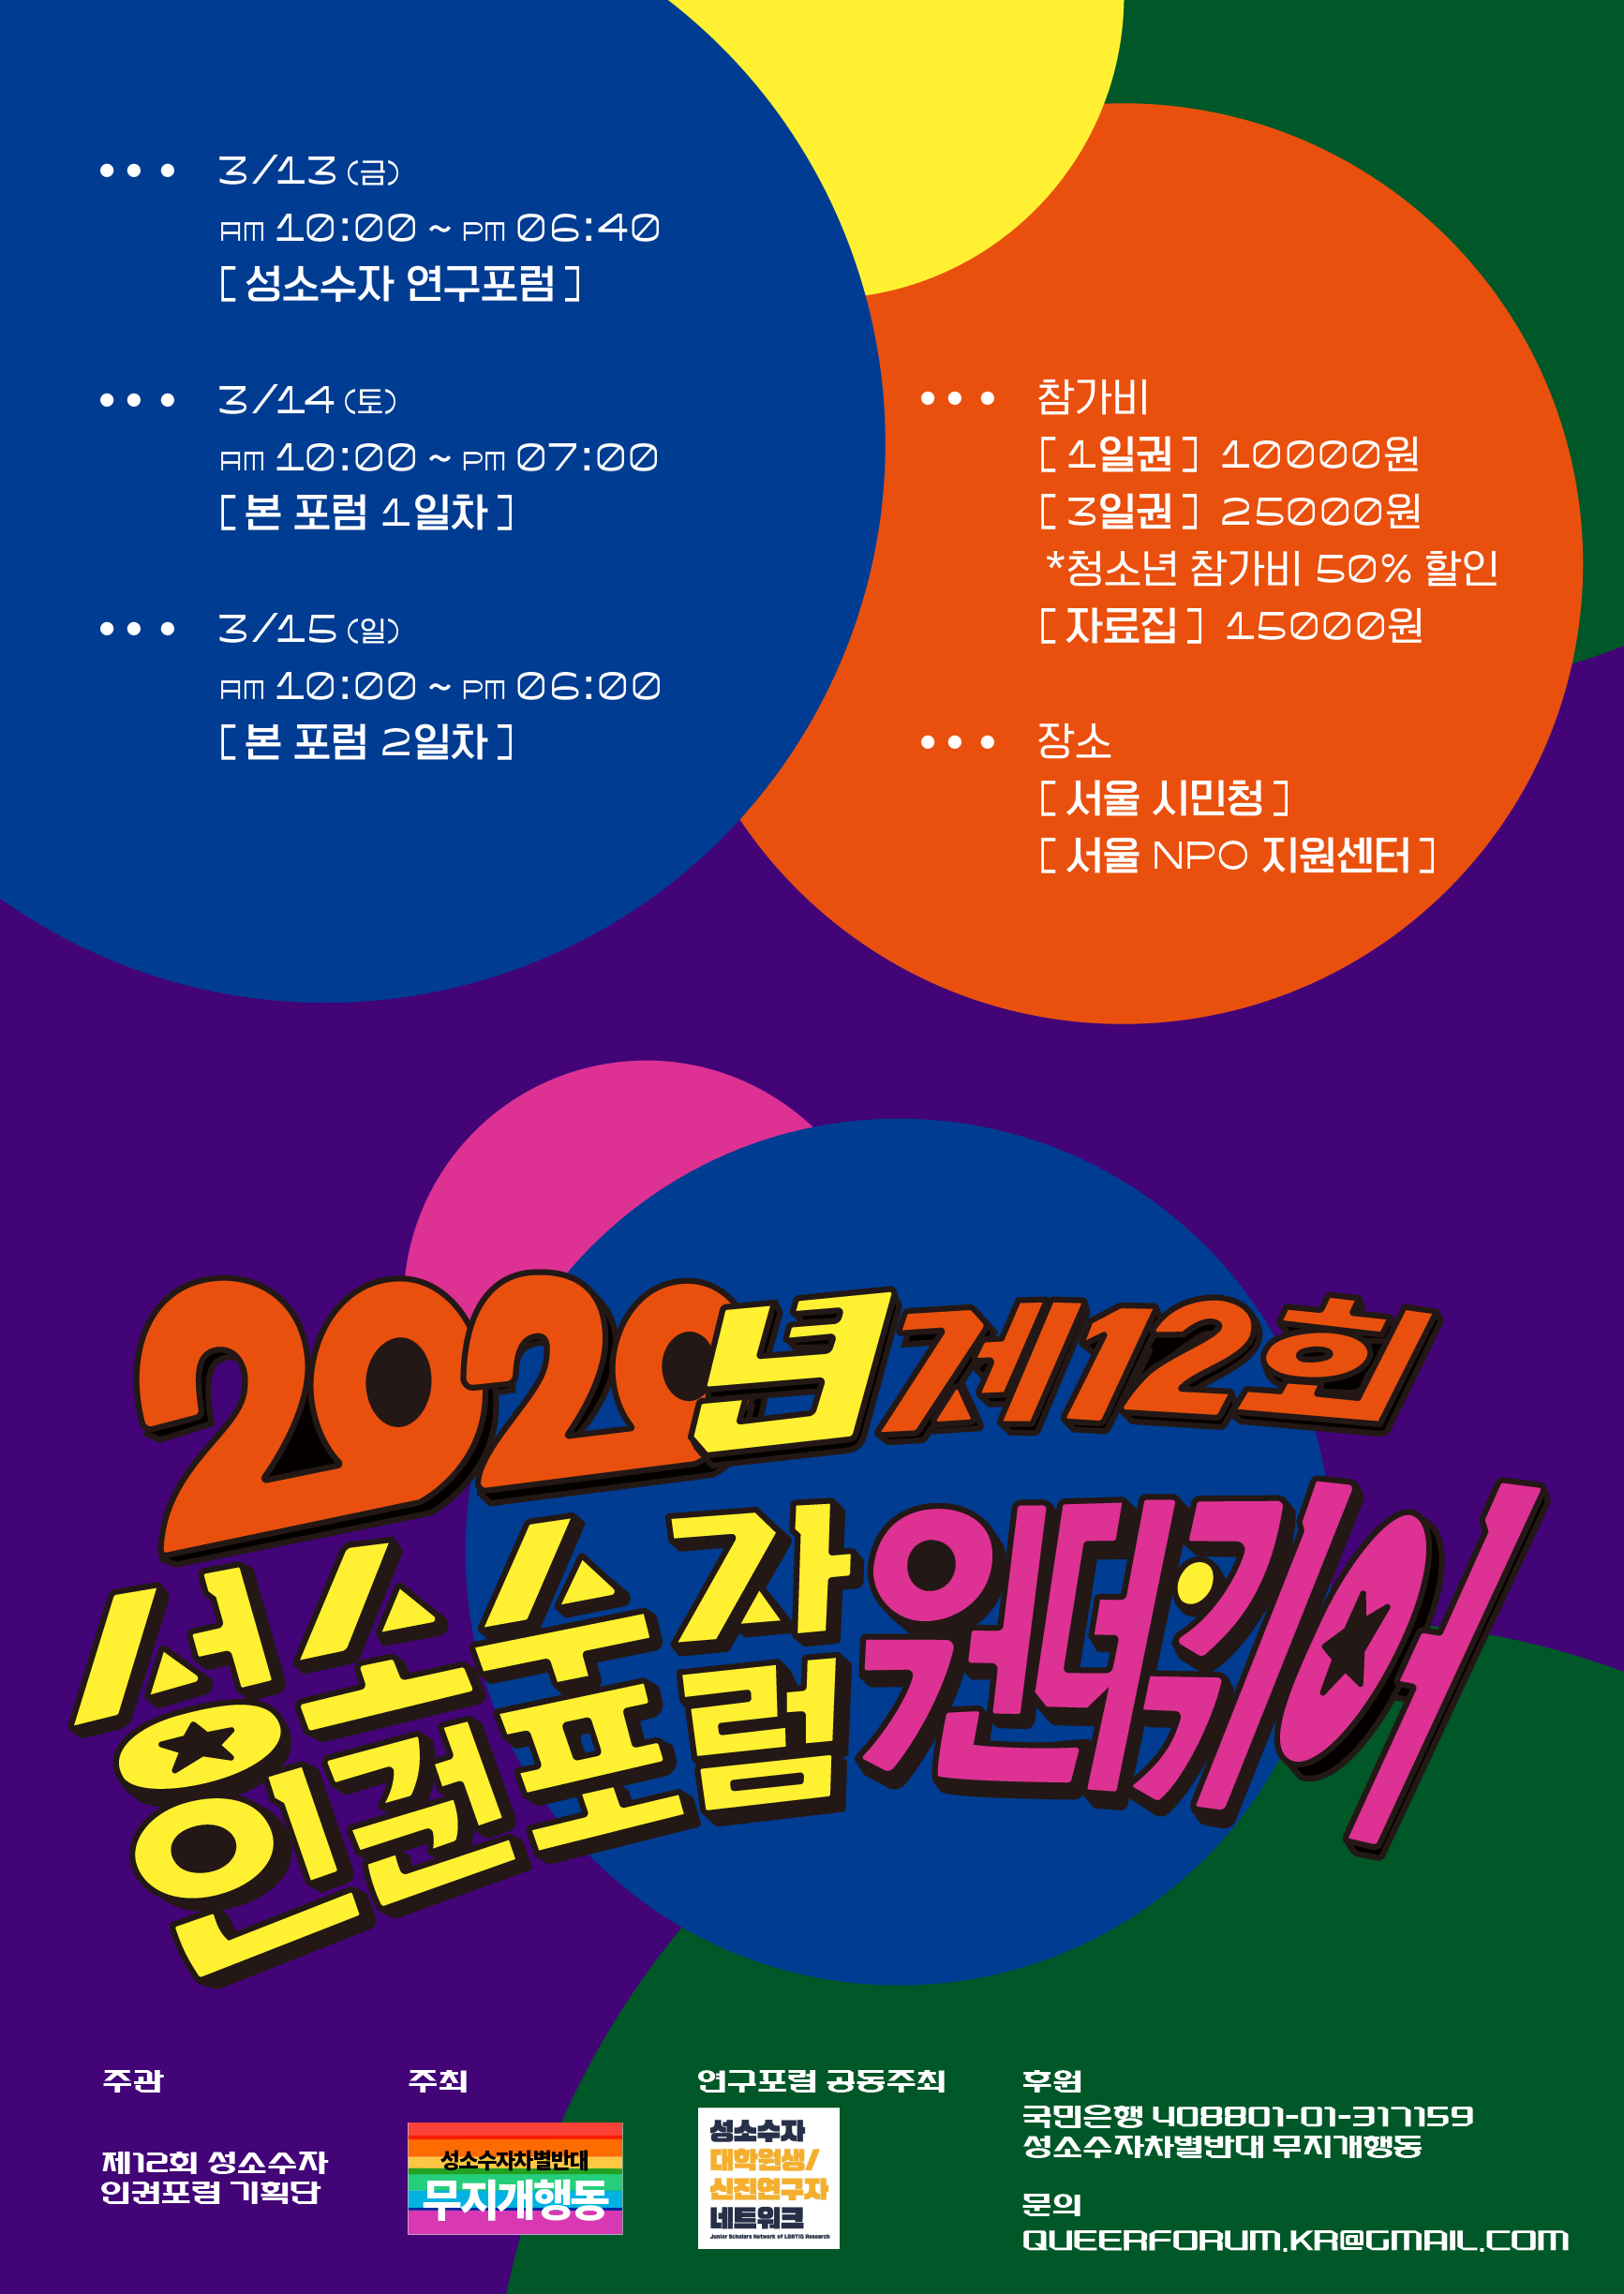 '(소식) 활동 소식: 서울인권영화제의 새로운 프로젝트를 전합니다'의 대표이미지